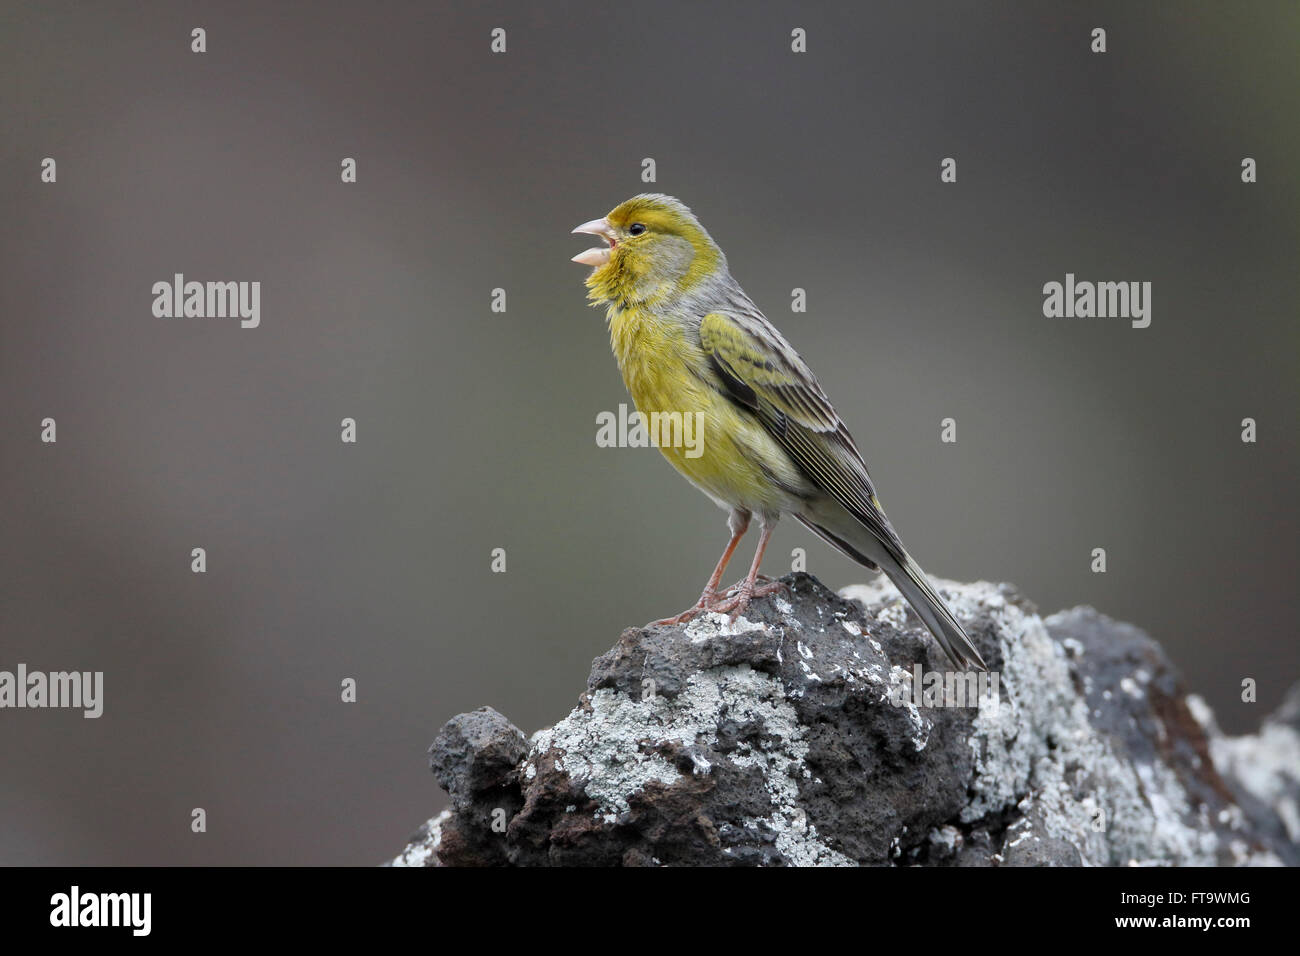 Atlántico canario, Serinus canaria, única ave en roca, Madeira, marzo de 2016 Foto de stock